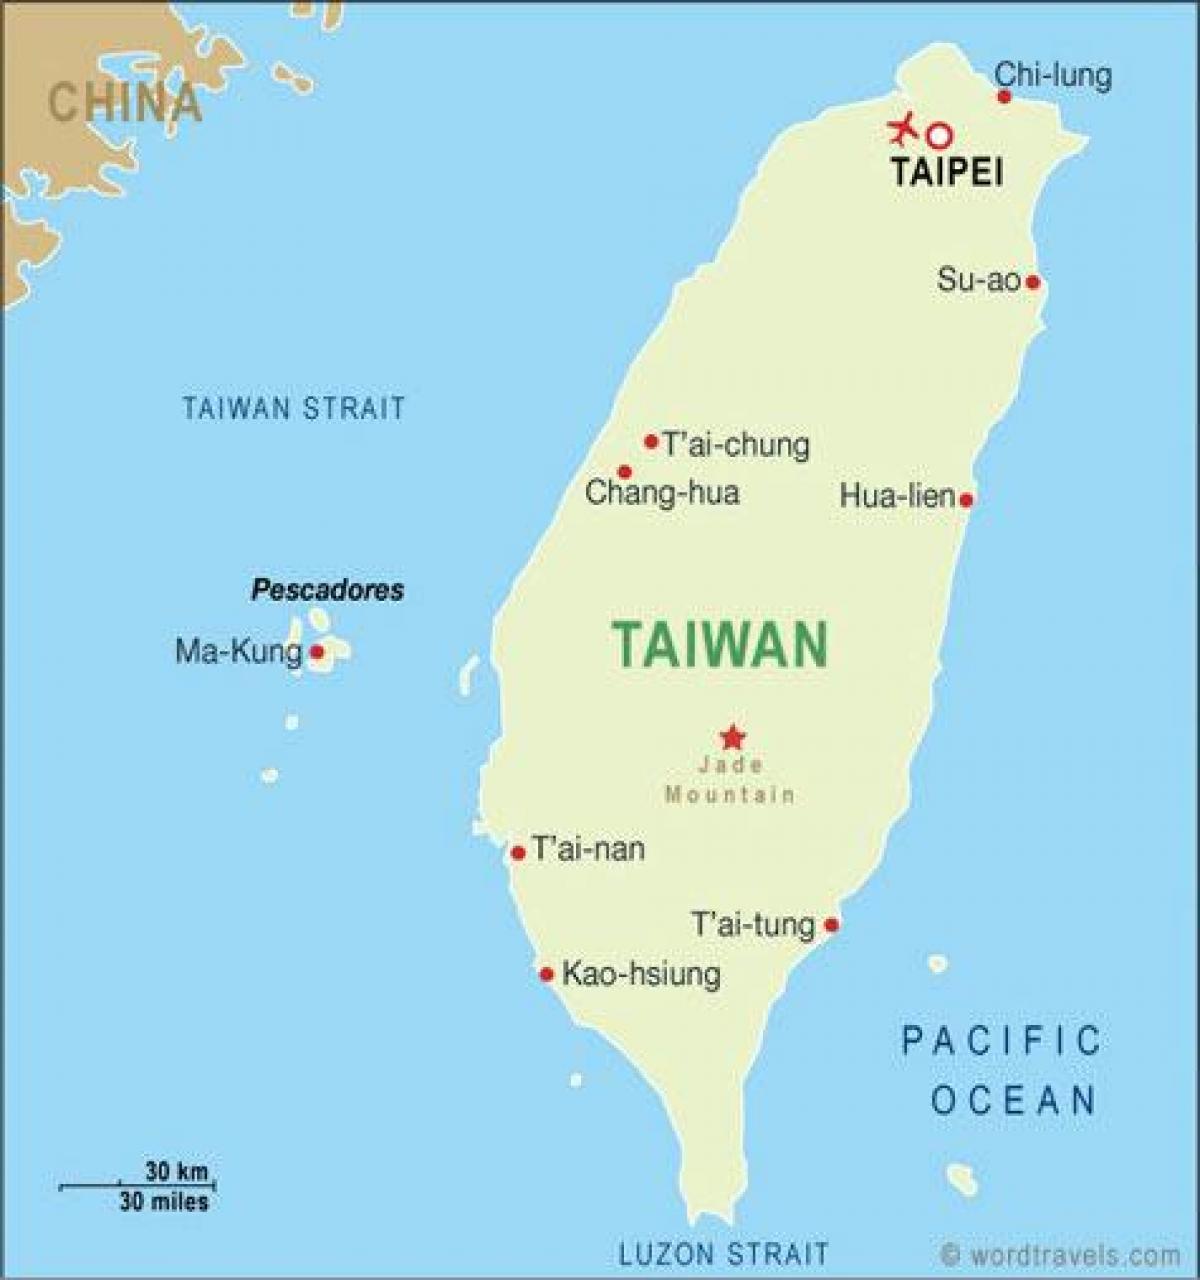 Թայվան միջազգային օդանավակայանի таоюань քարտեզի վրա